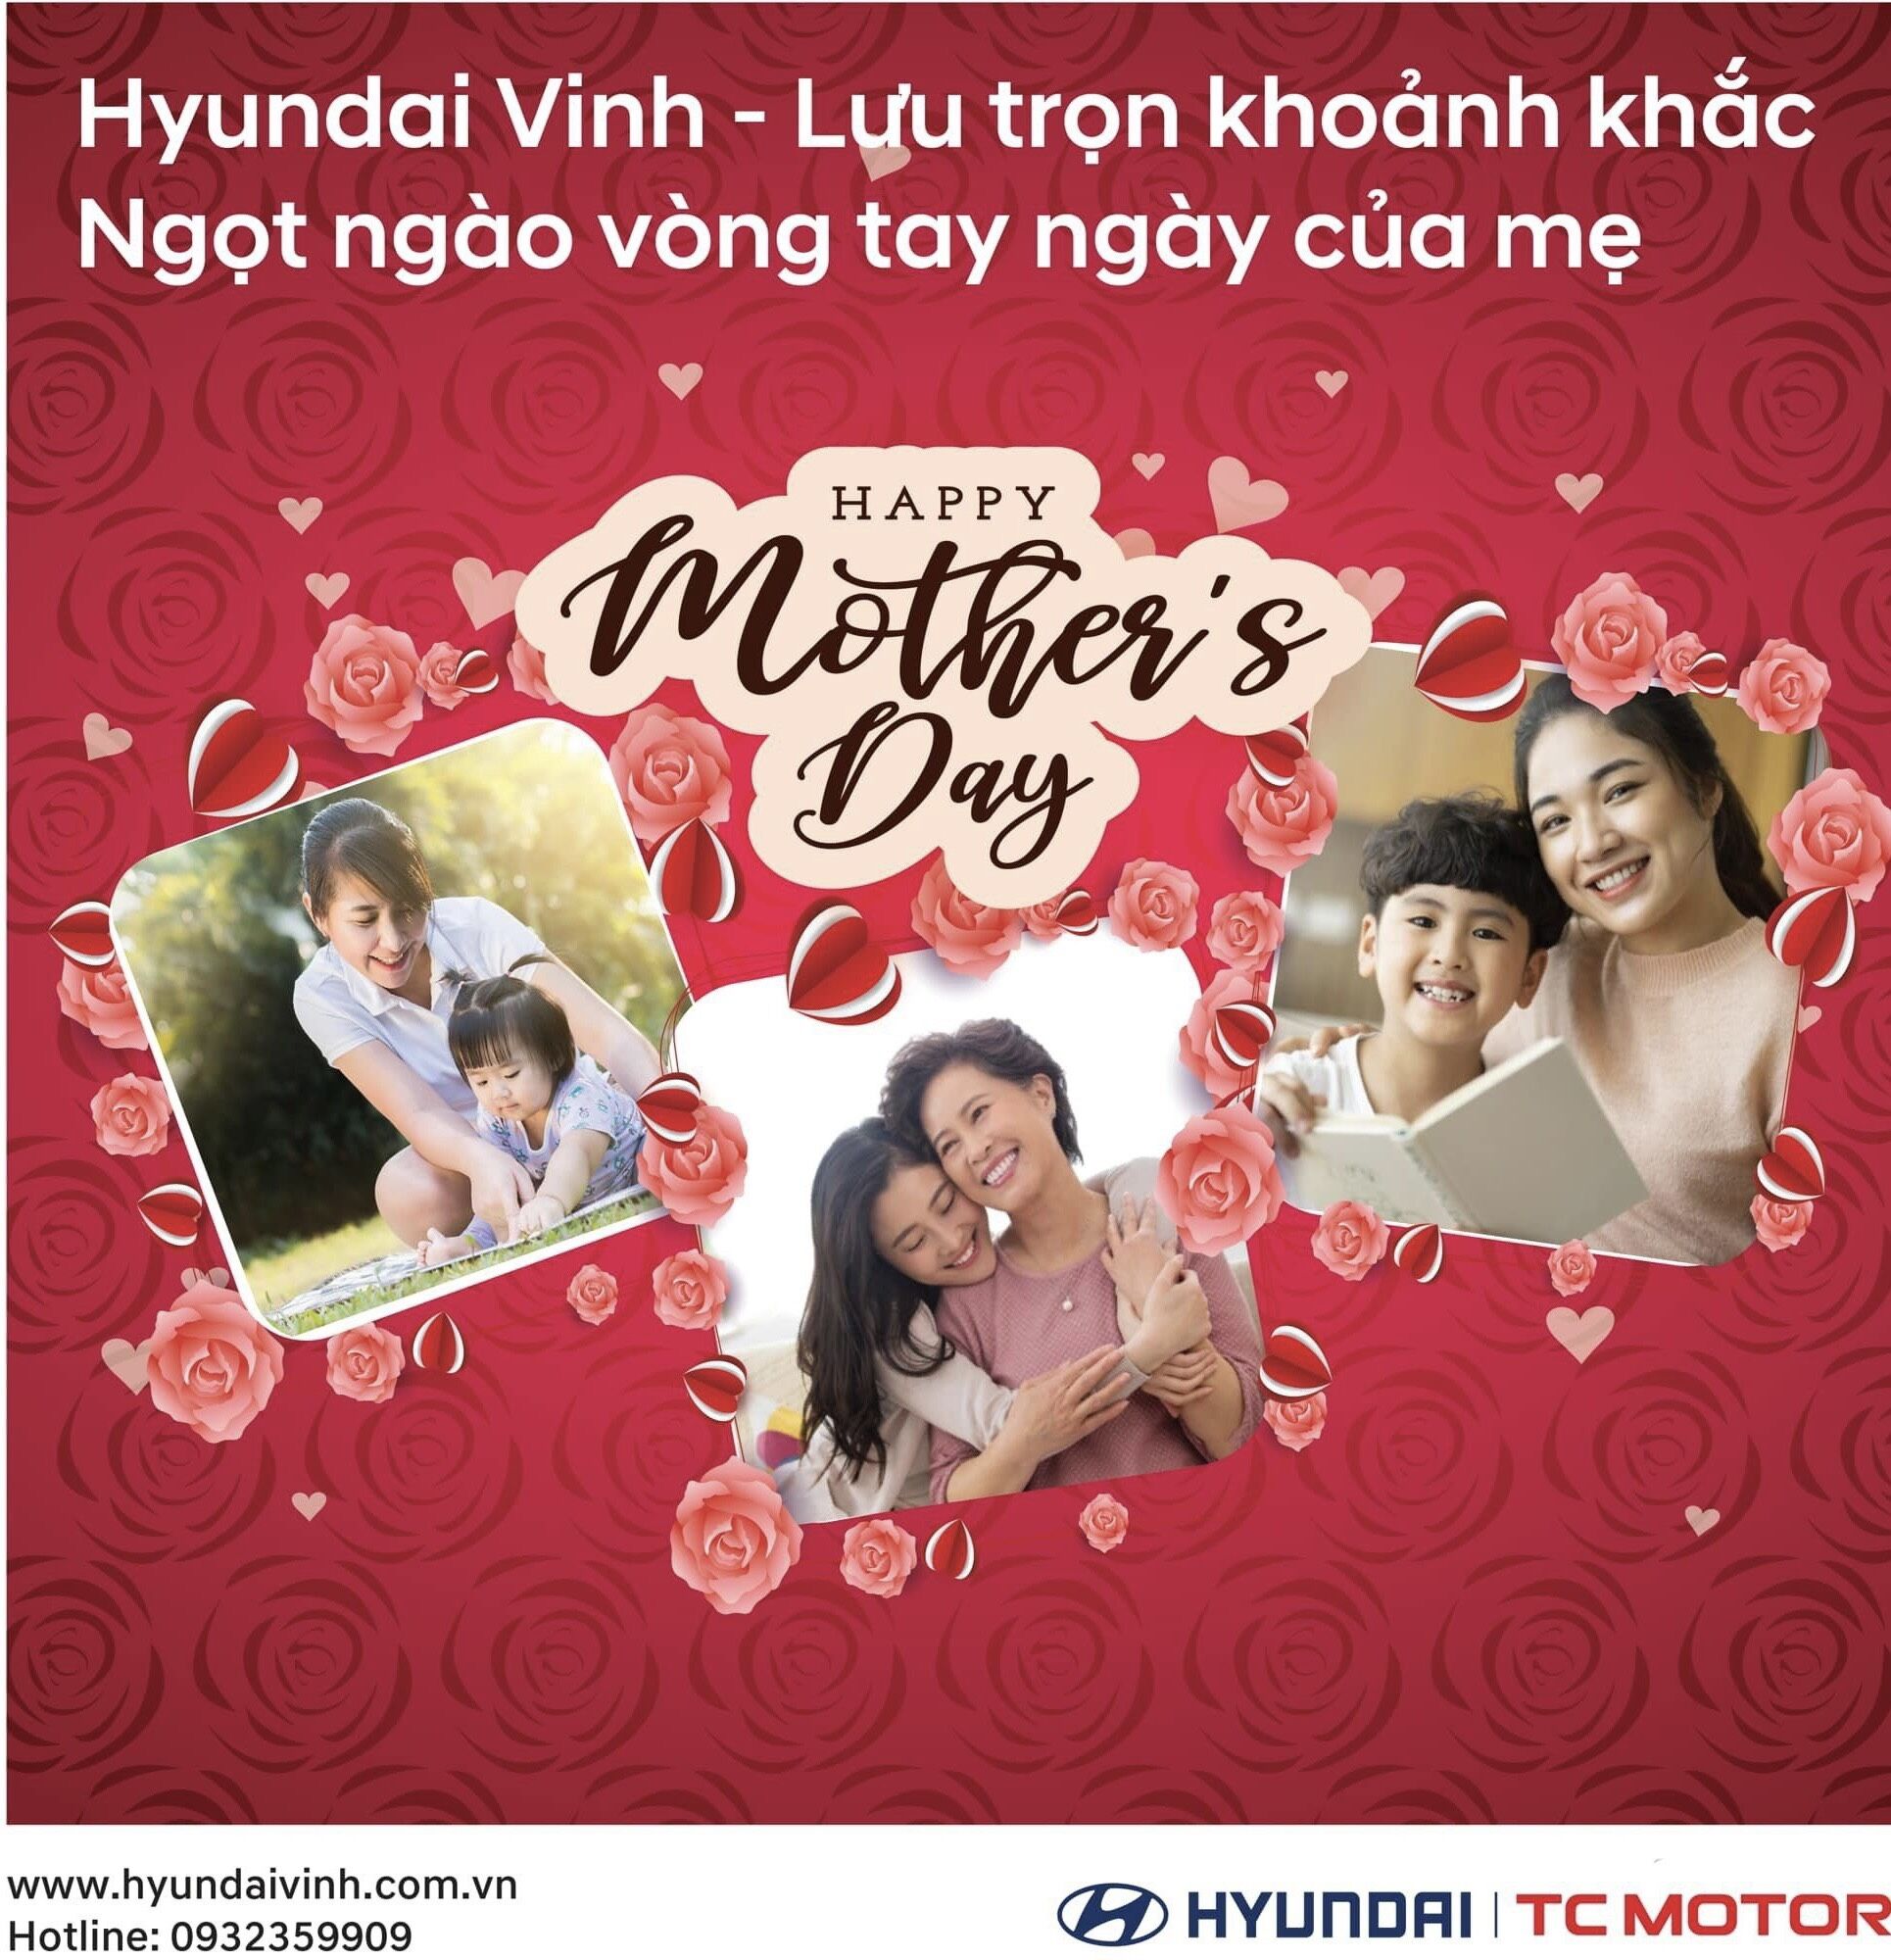 Hyundai Vinh mừng Ngày của Mẹ